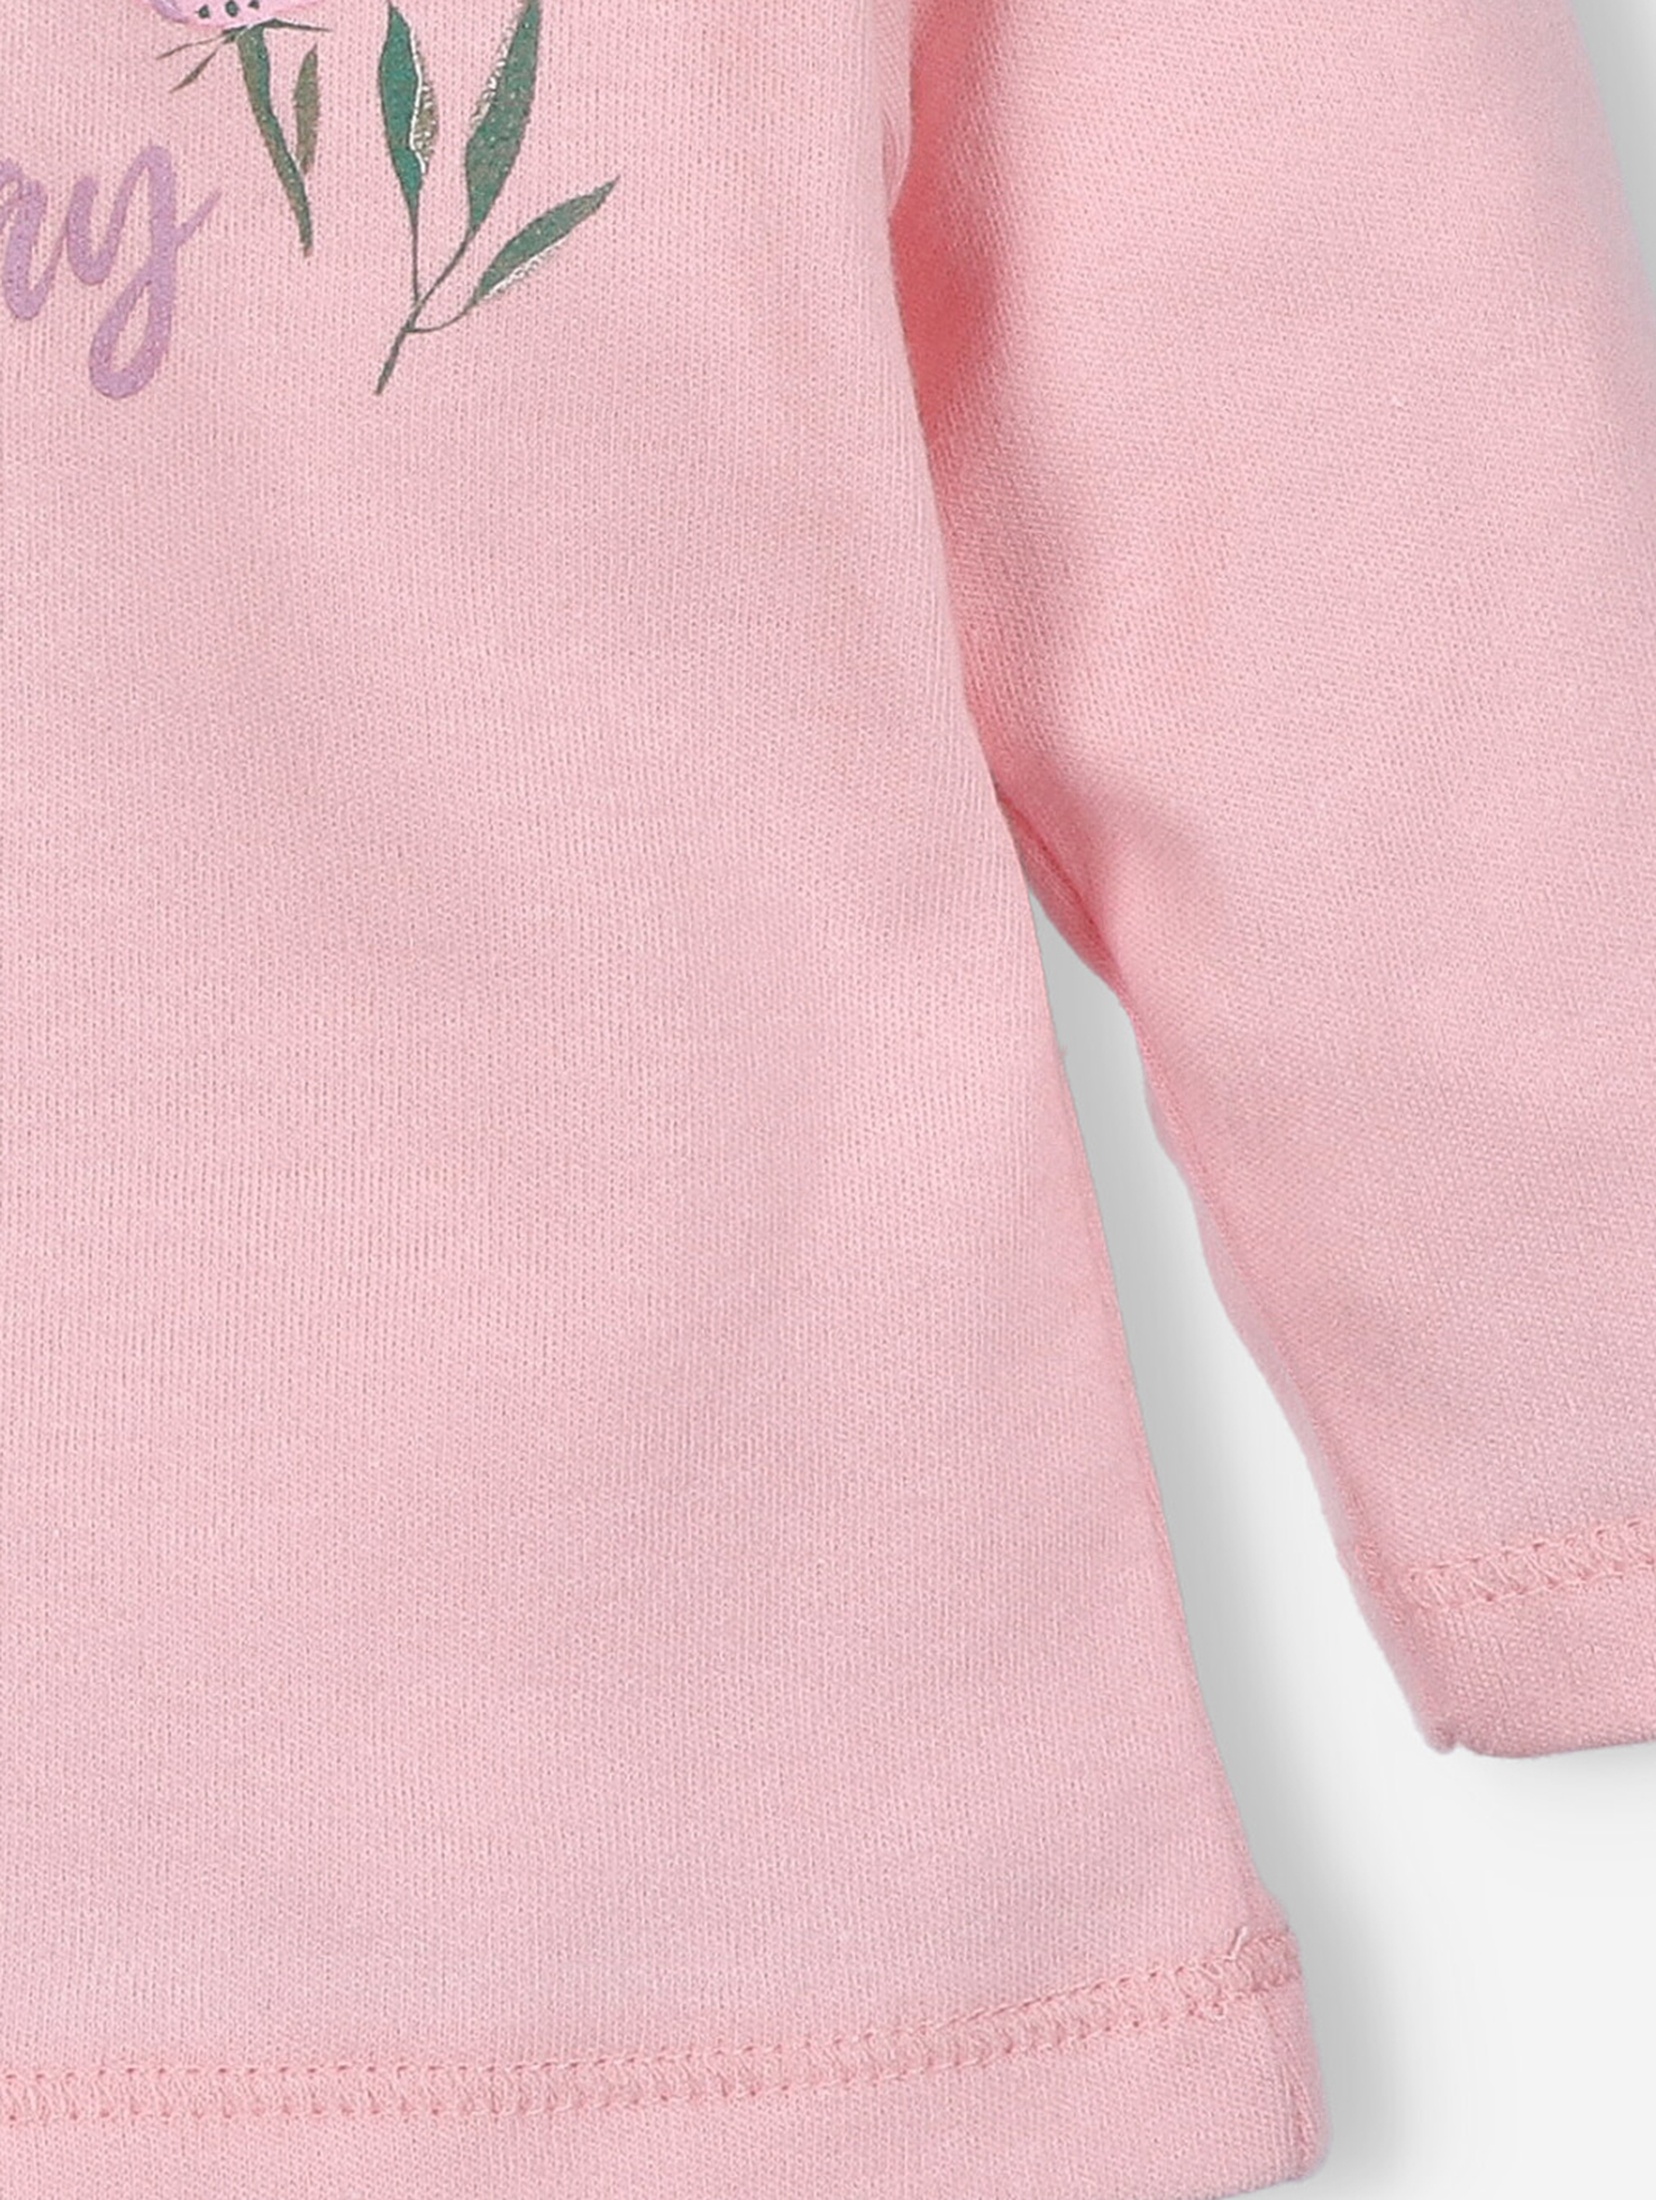 Bluzka niemowlęca PINK FLOWERS z bawełny organicznej różowa